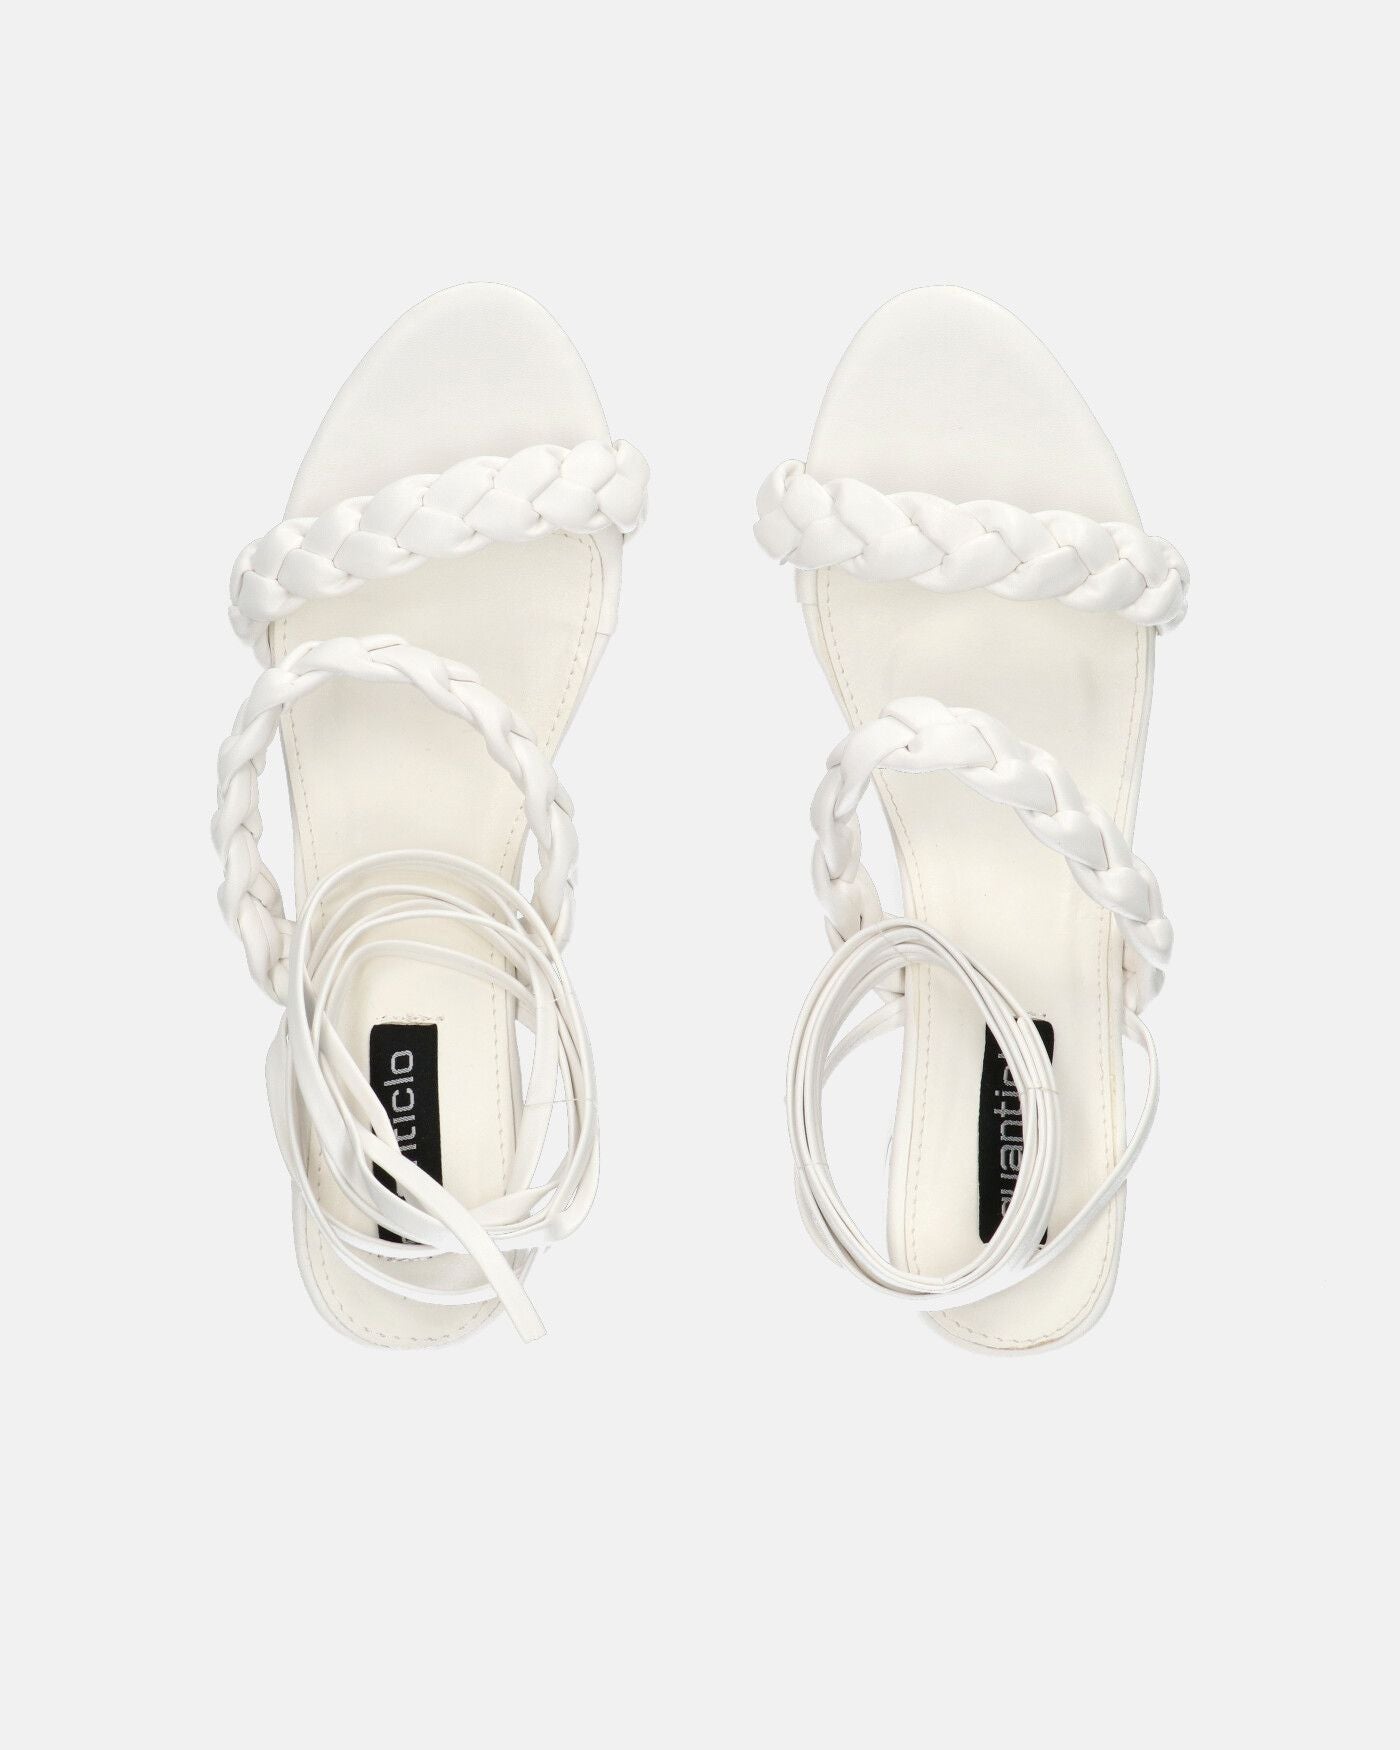 TARISAI - sandalias blancas de piel sintética con cordones